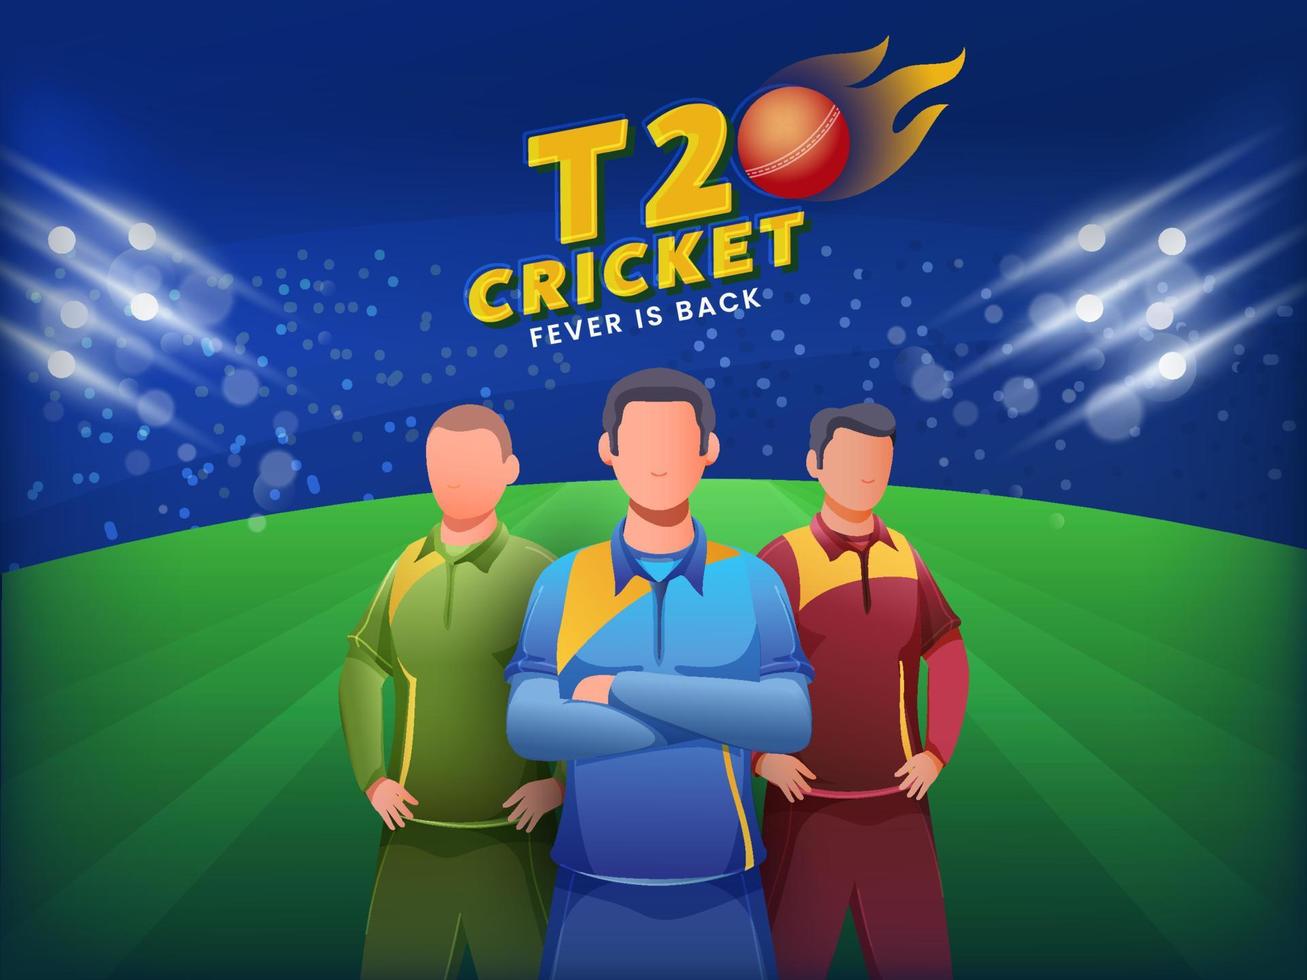 ansiktslös cricketspelare spelare i annorlunda klädsel på grön och blå lampor effekt bakgrund för t20 cricket feber är tillbaka. vektor